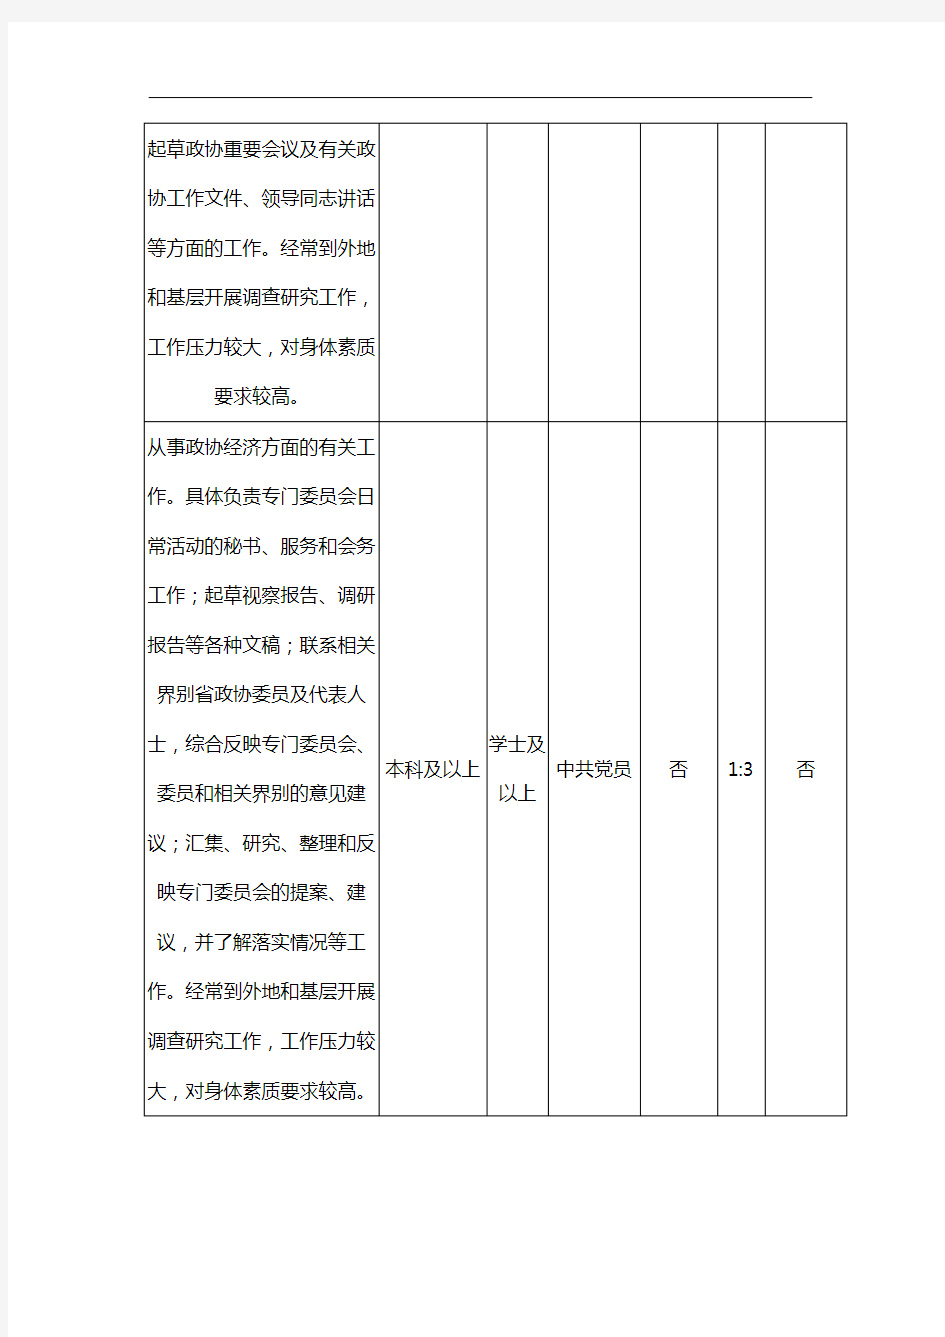 2014年福建省公务员考试职位表汇总【模板】